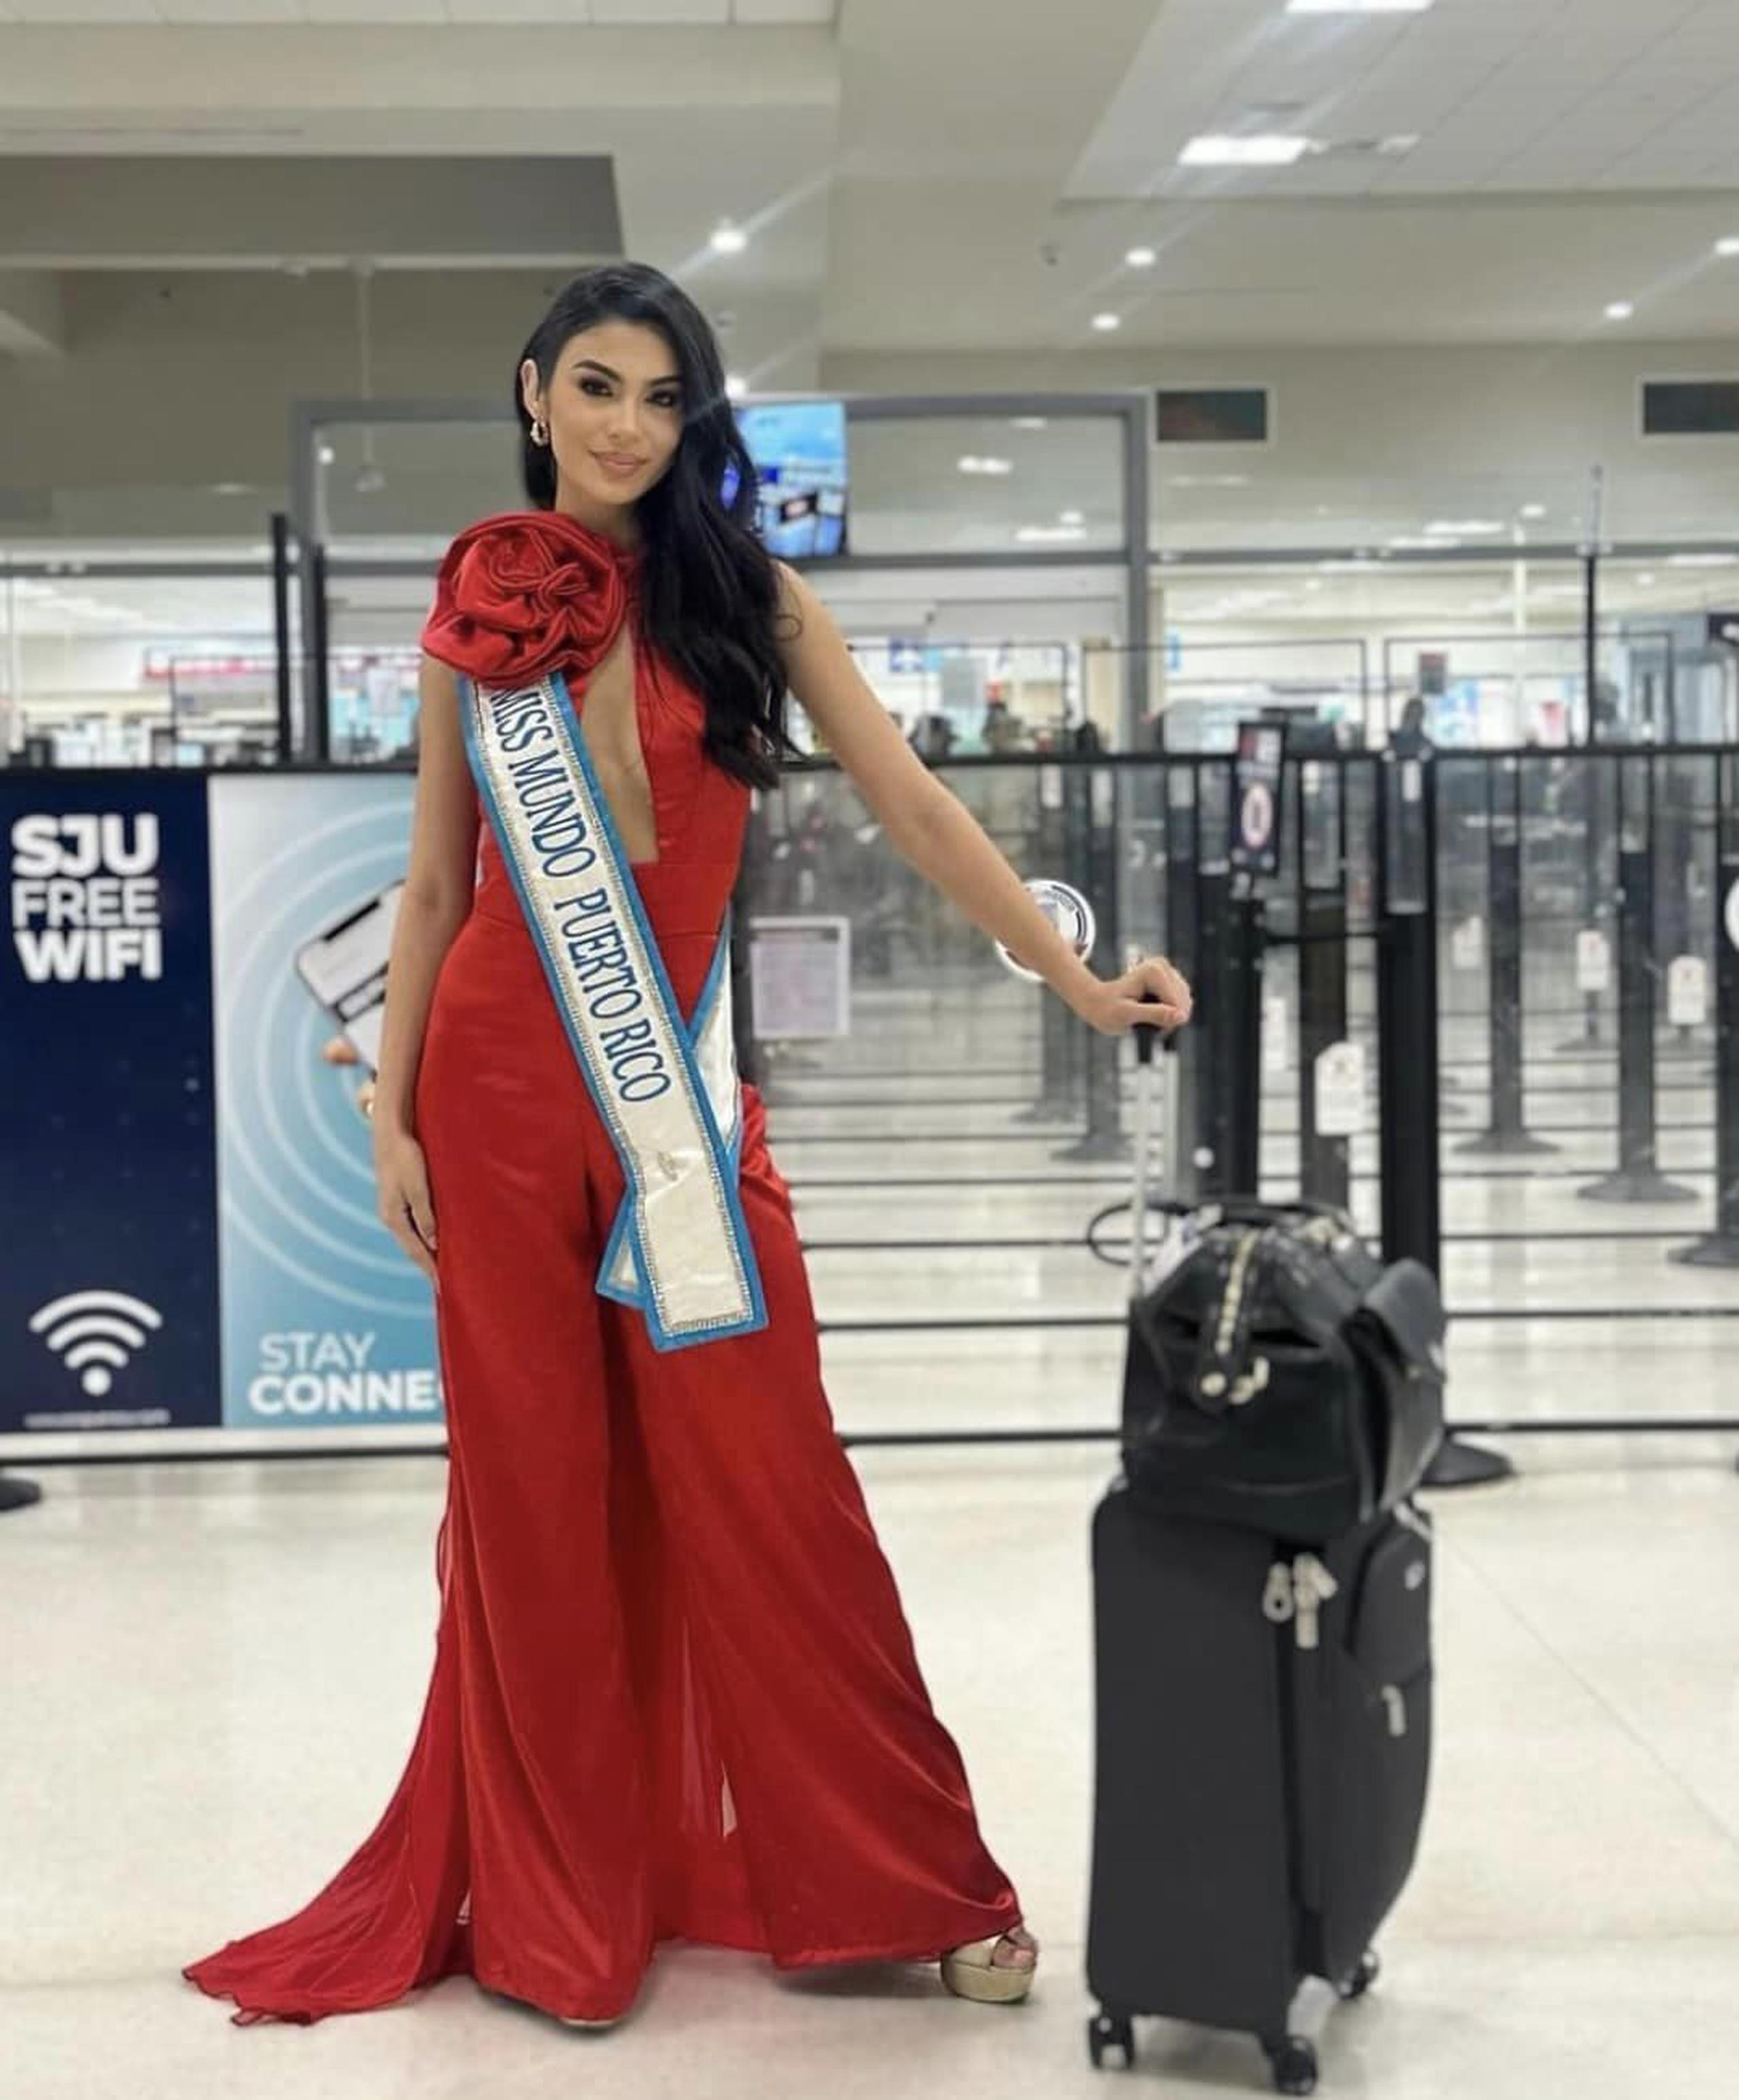 Elena Rivera buscará la tercera corona para Puerto Rico en Miss Mundo, que celebrará su certamen número 71 en la India.